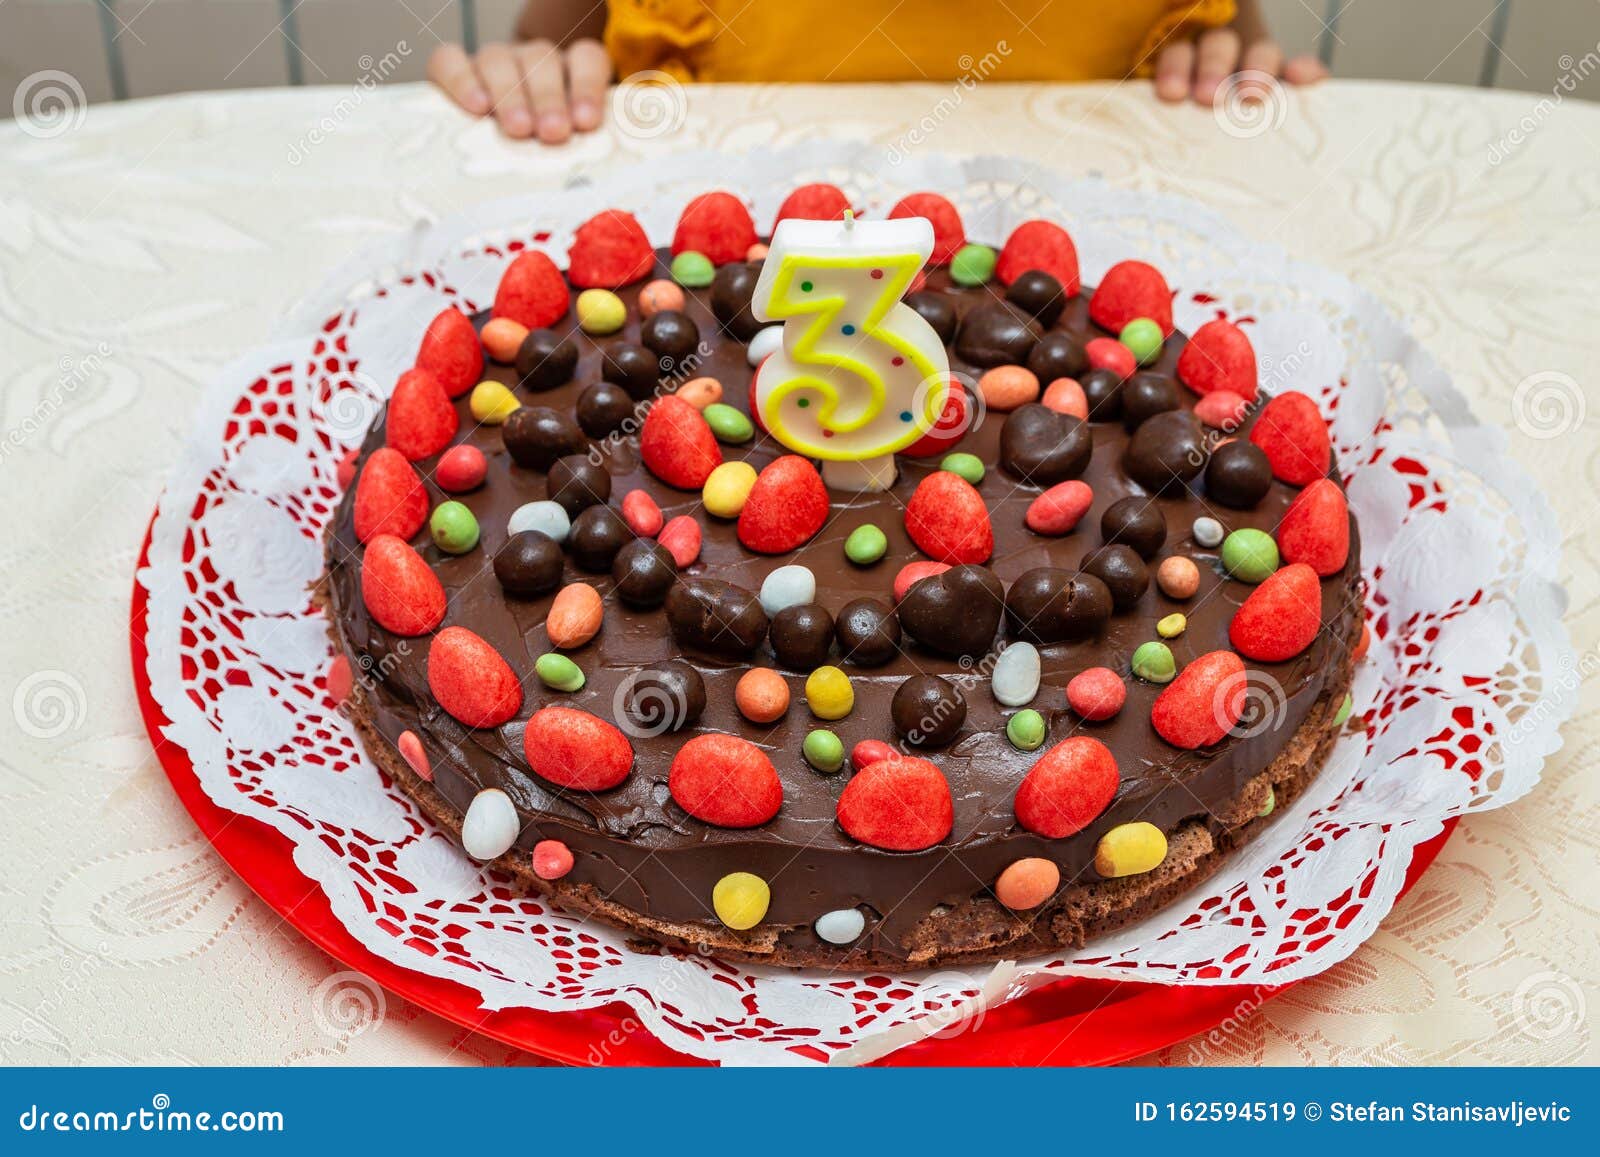 desconocido escritorio telescopio Torta De Cumpleaños De Chocolate Para Niños Imagen de archivo - Imagen de  caramelos, tortas: 162594519